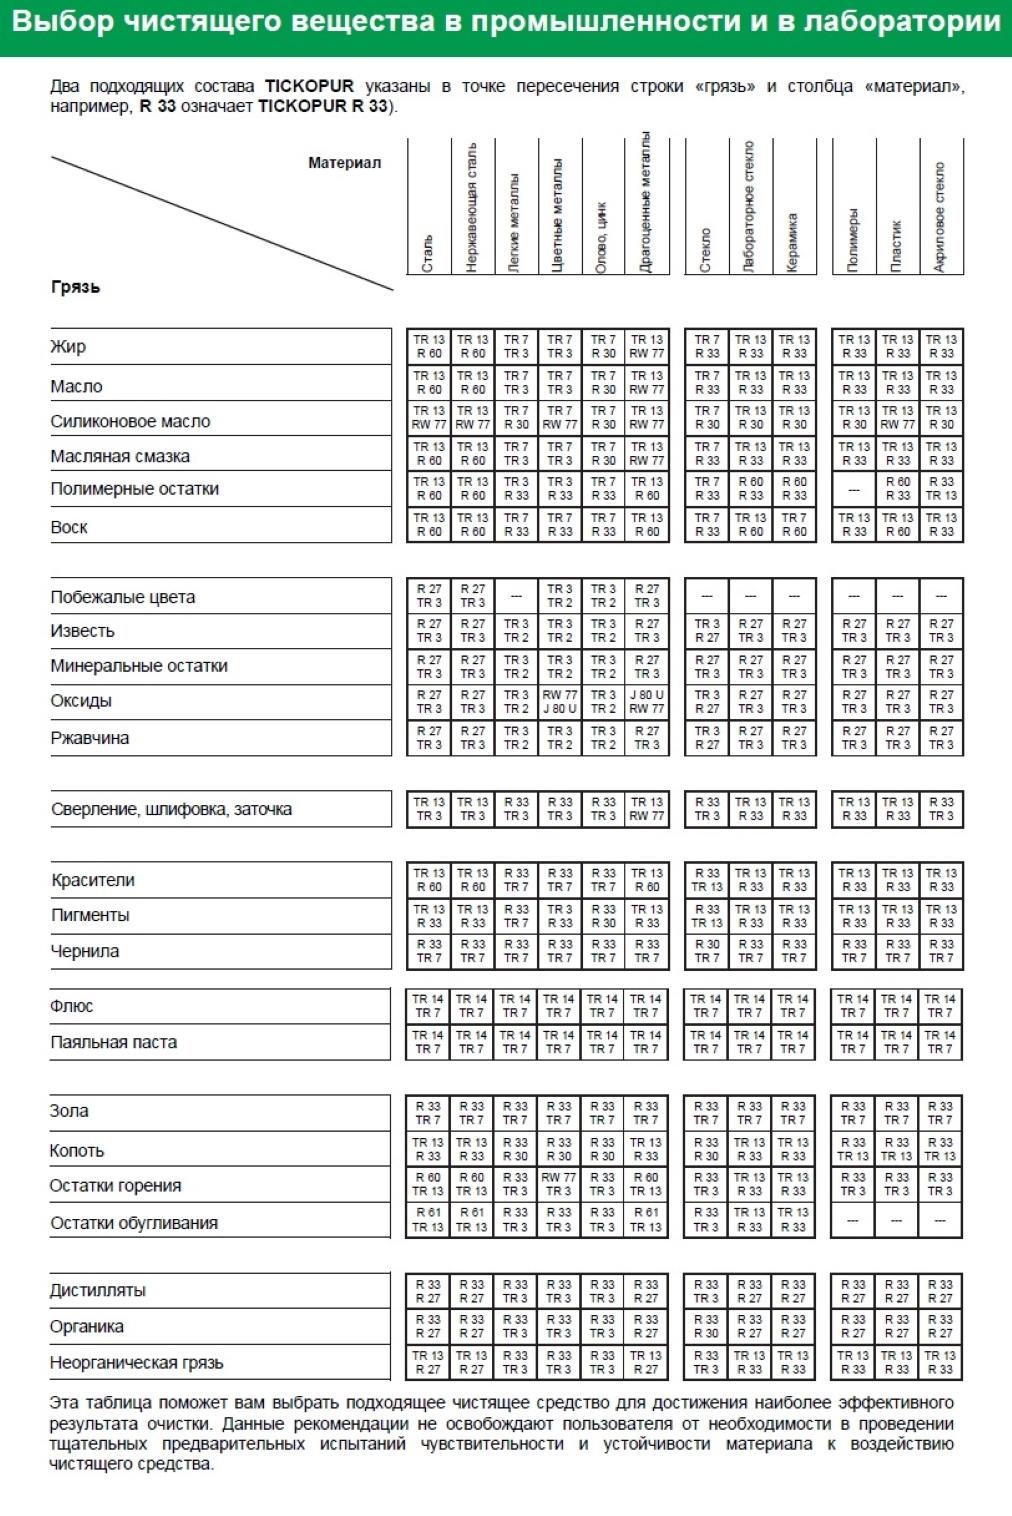 Таблица выбора чистящего средства R 36 TICKOPUR